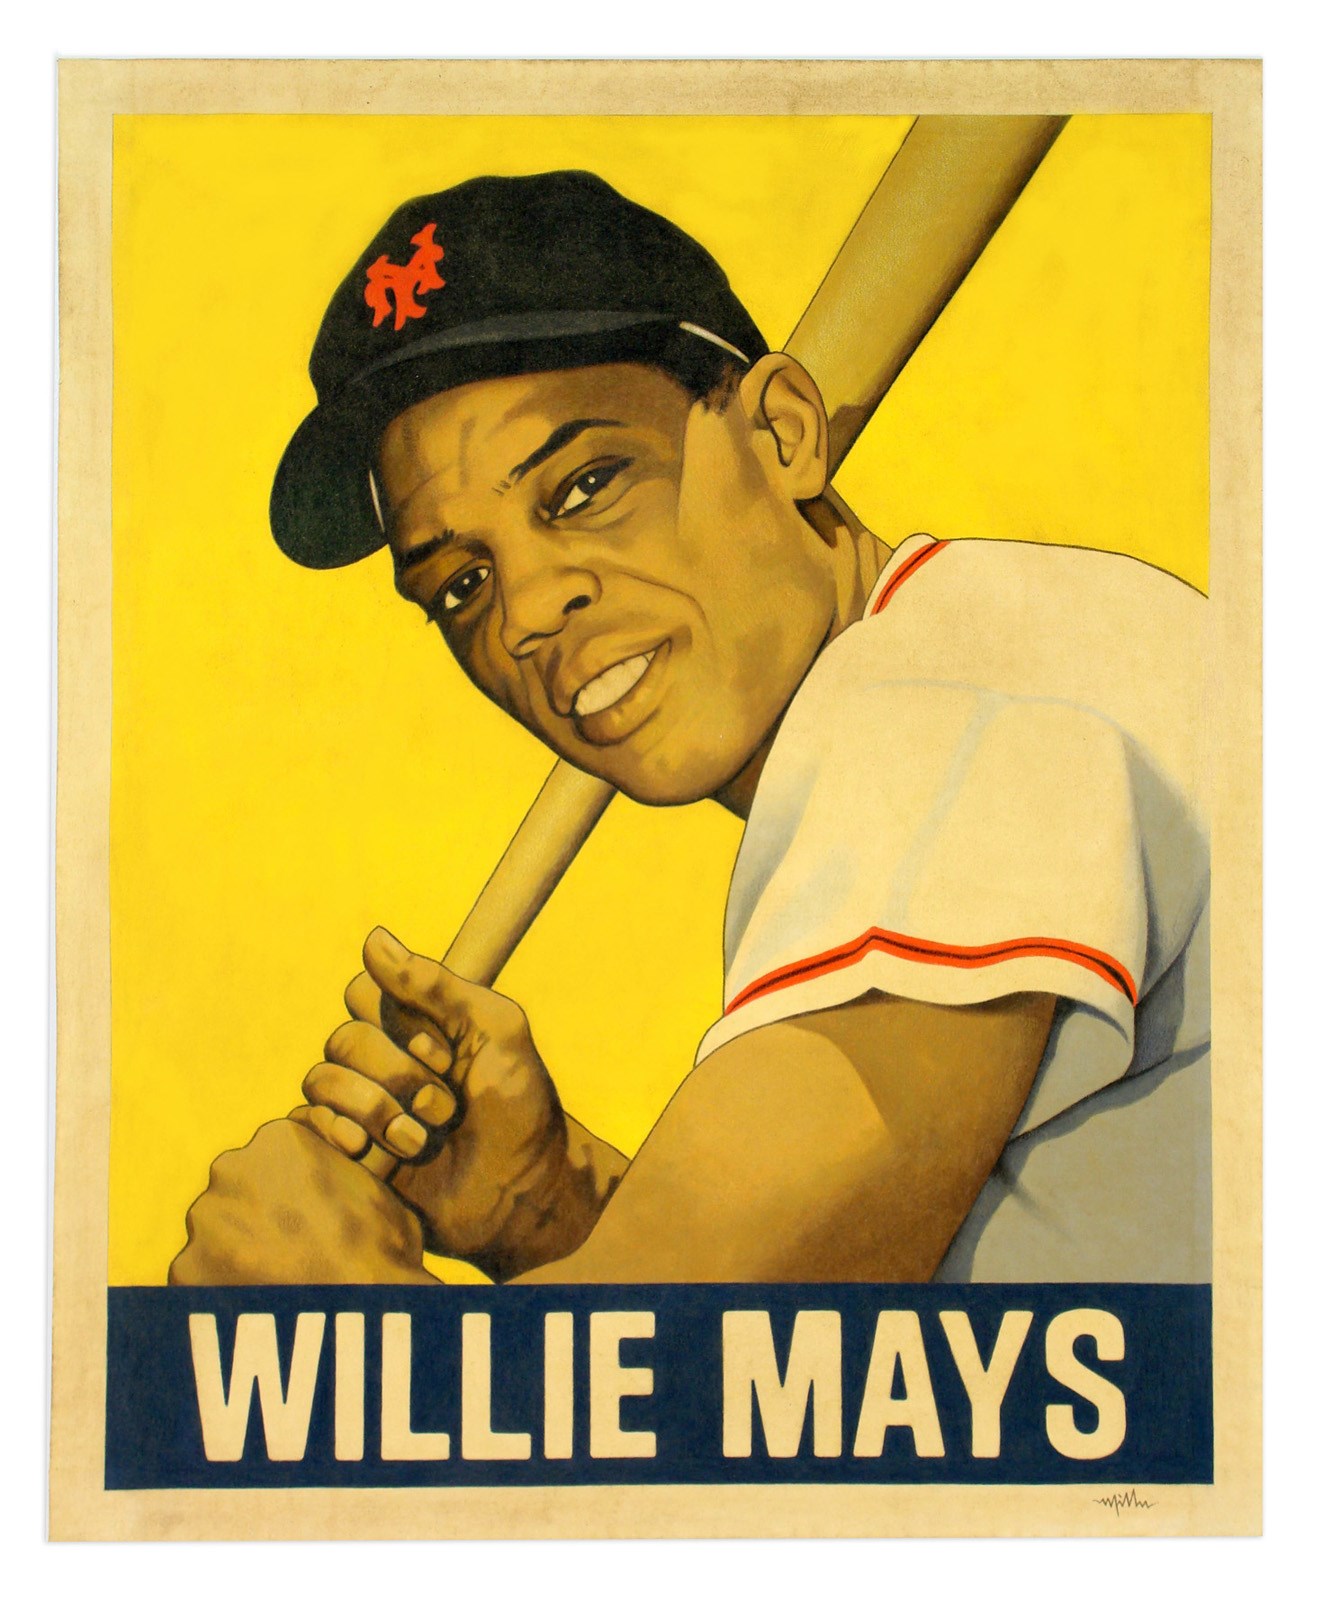 - “WILLIE MAYS (1948 Leaf)” by Arthur K Miller